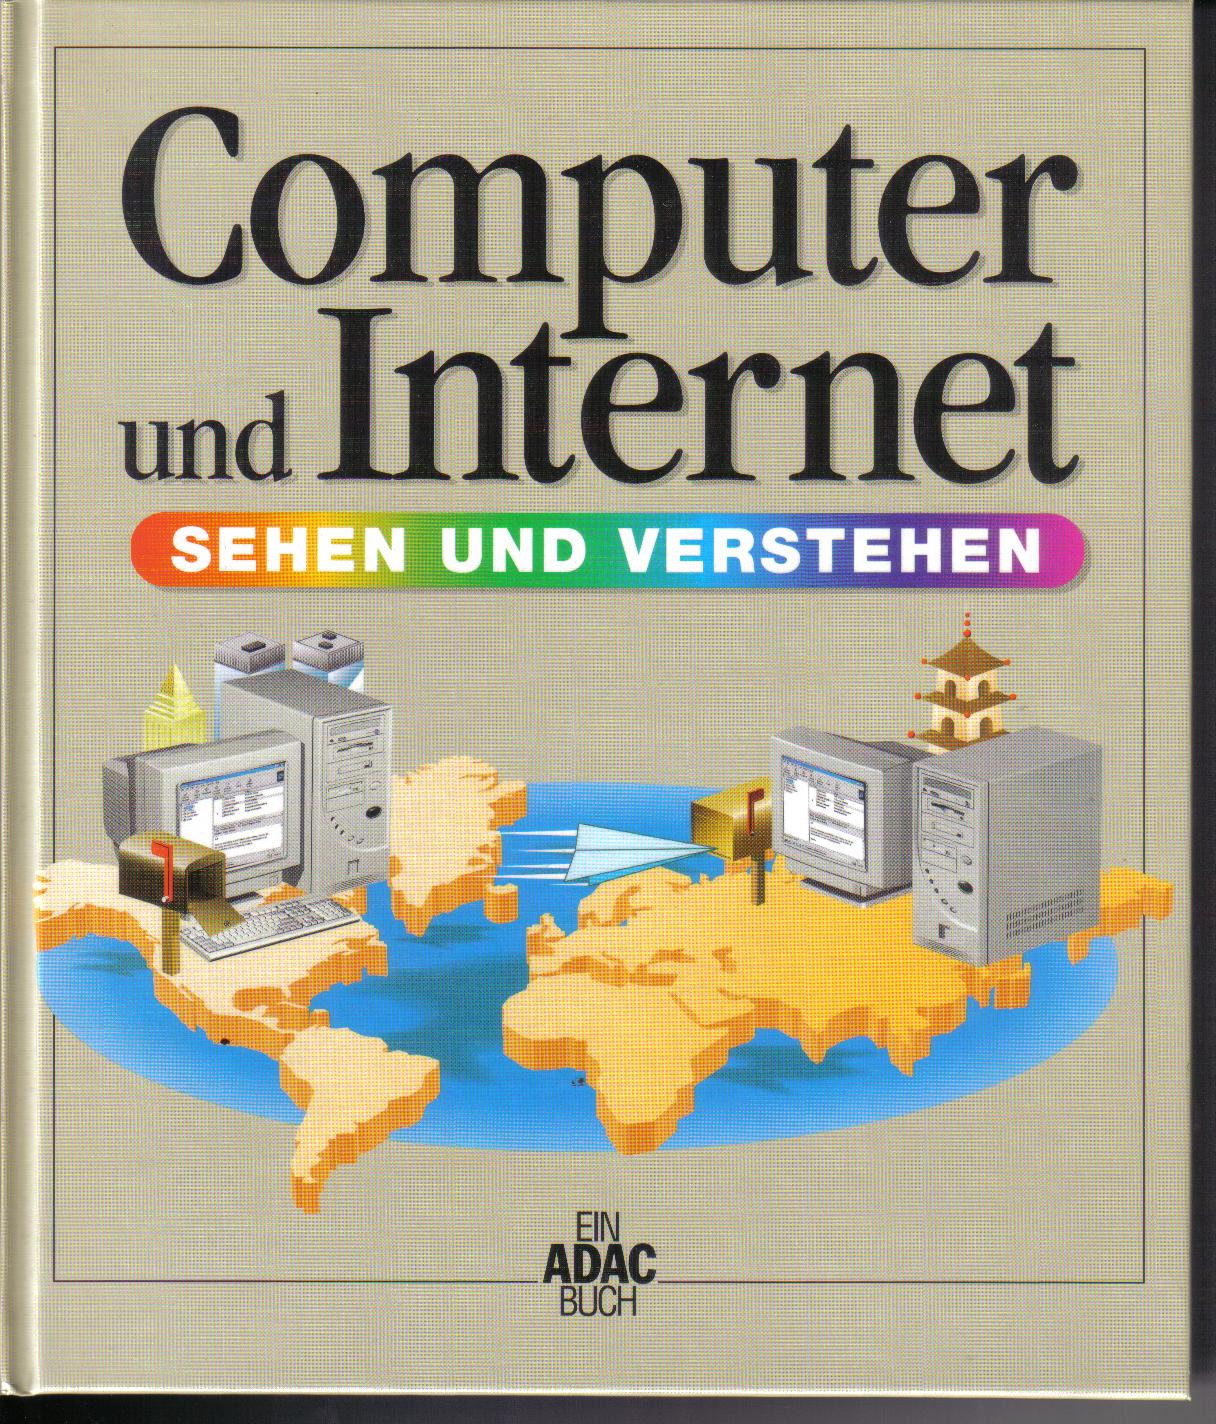 Computer und Internet- sehen und verstehenein ADAC Buch